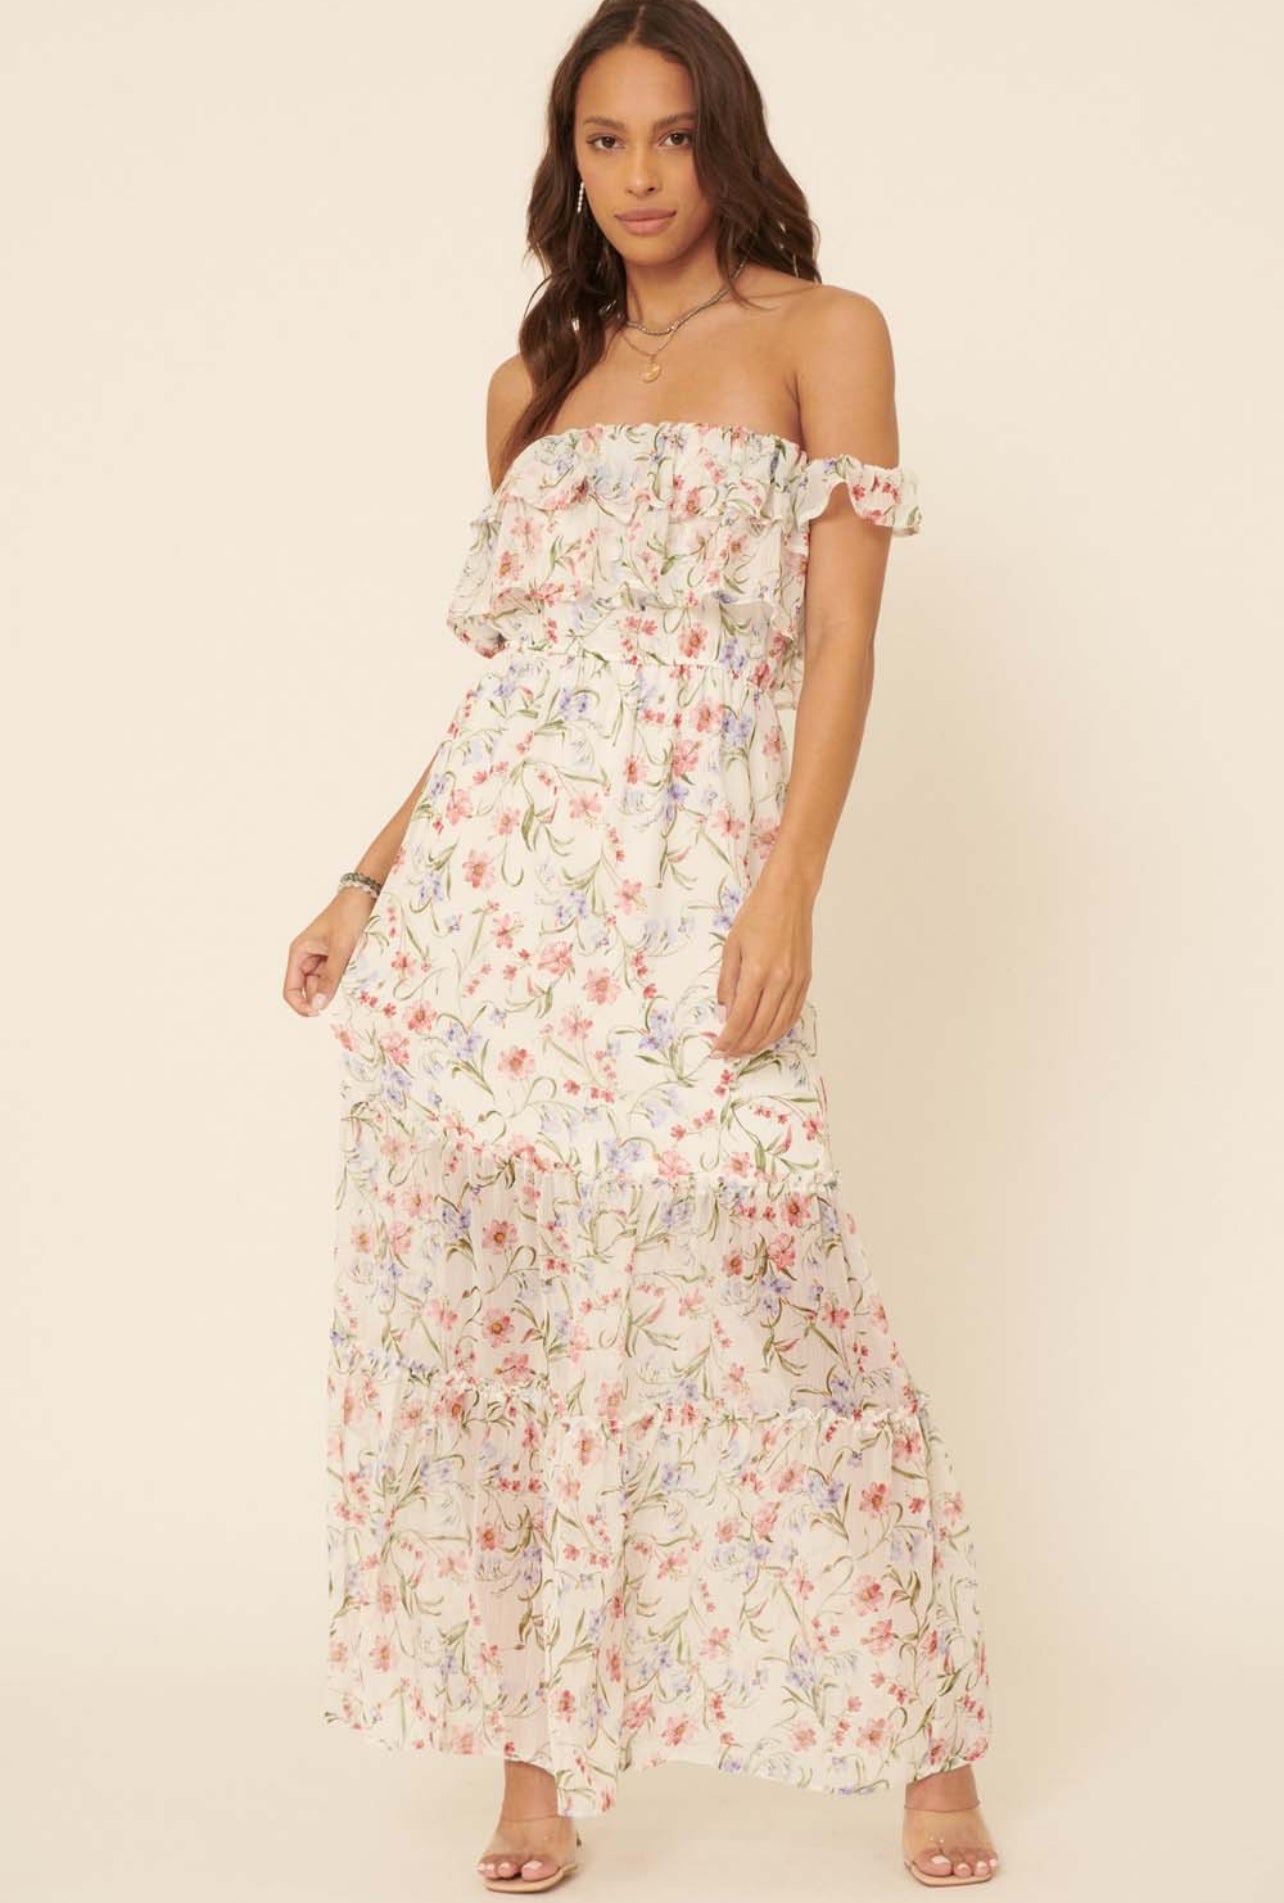 “April” Floral Maxi Dress